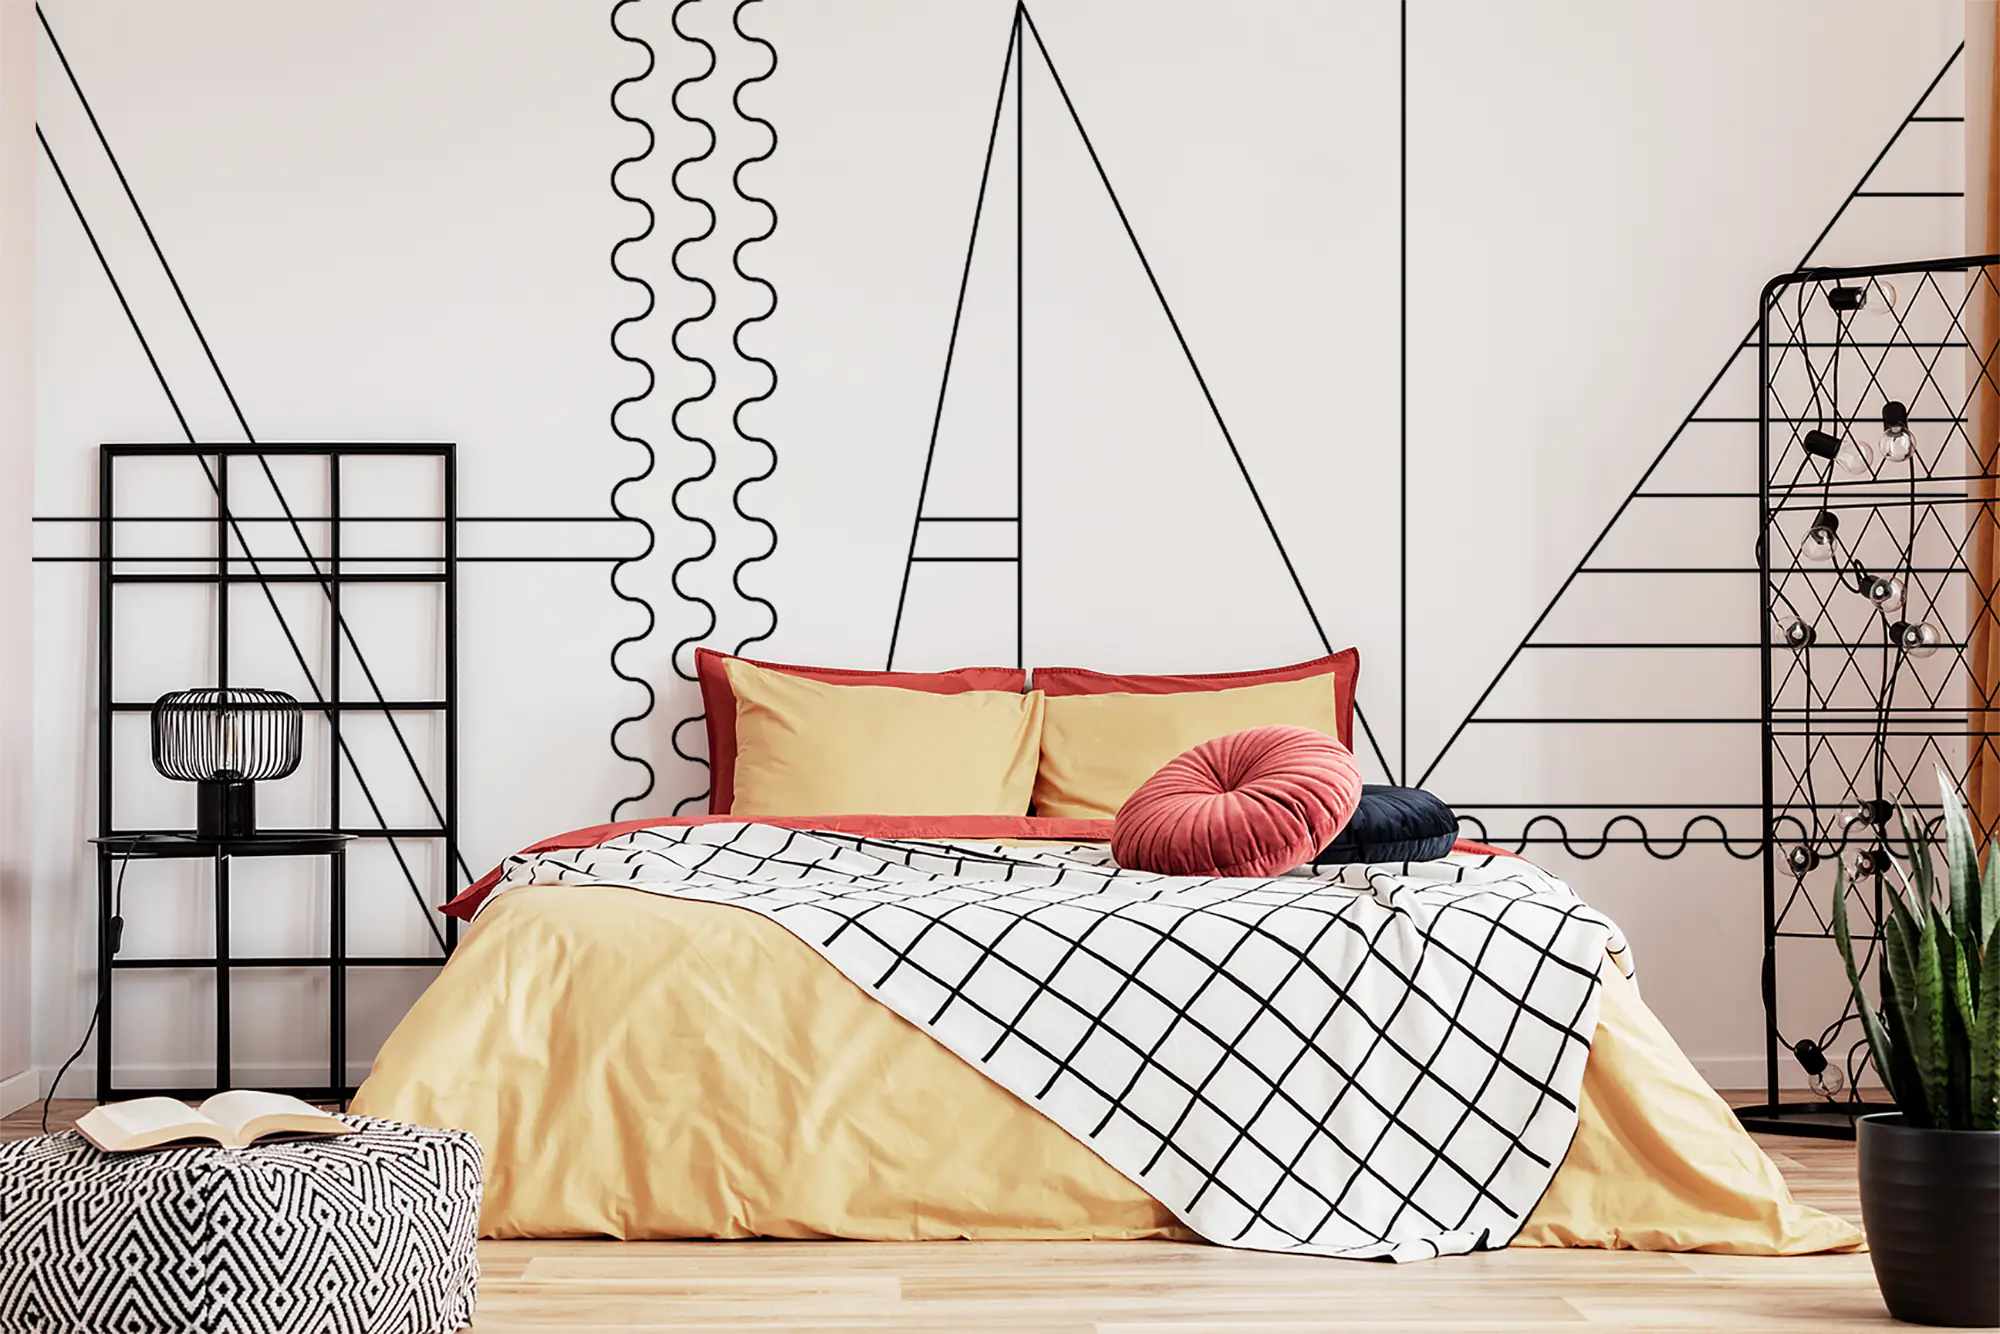 modern-minimalist-bedroom